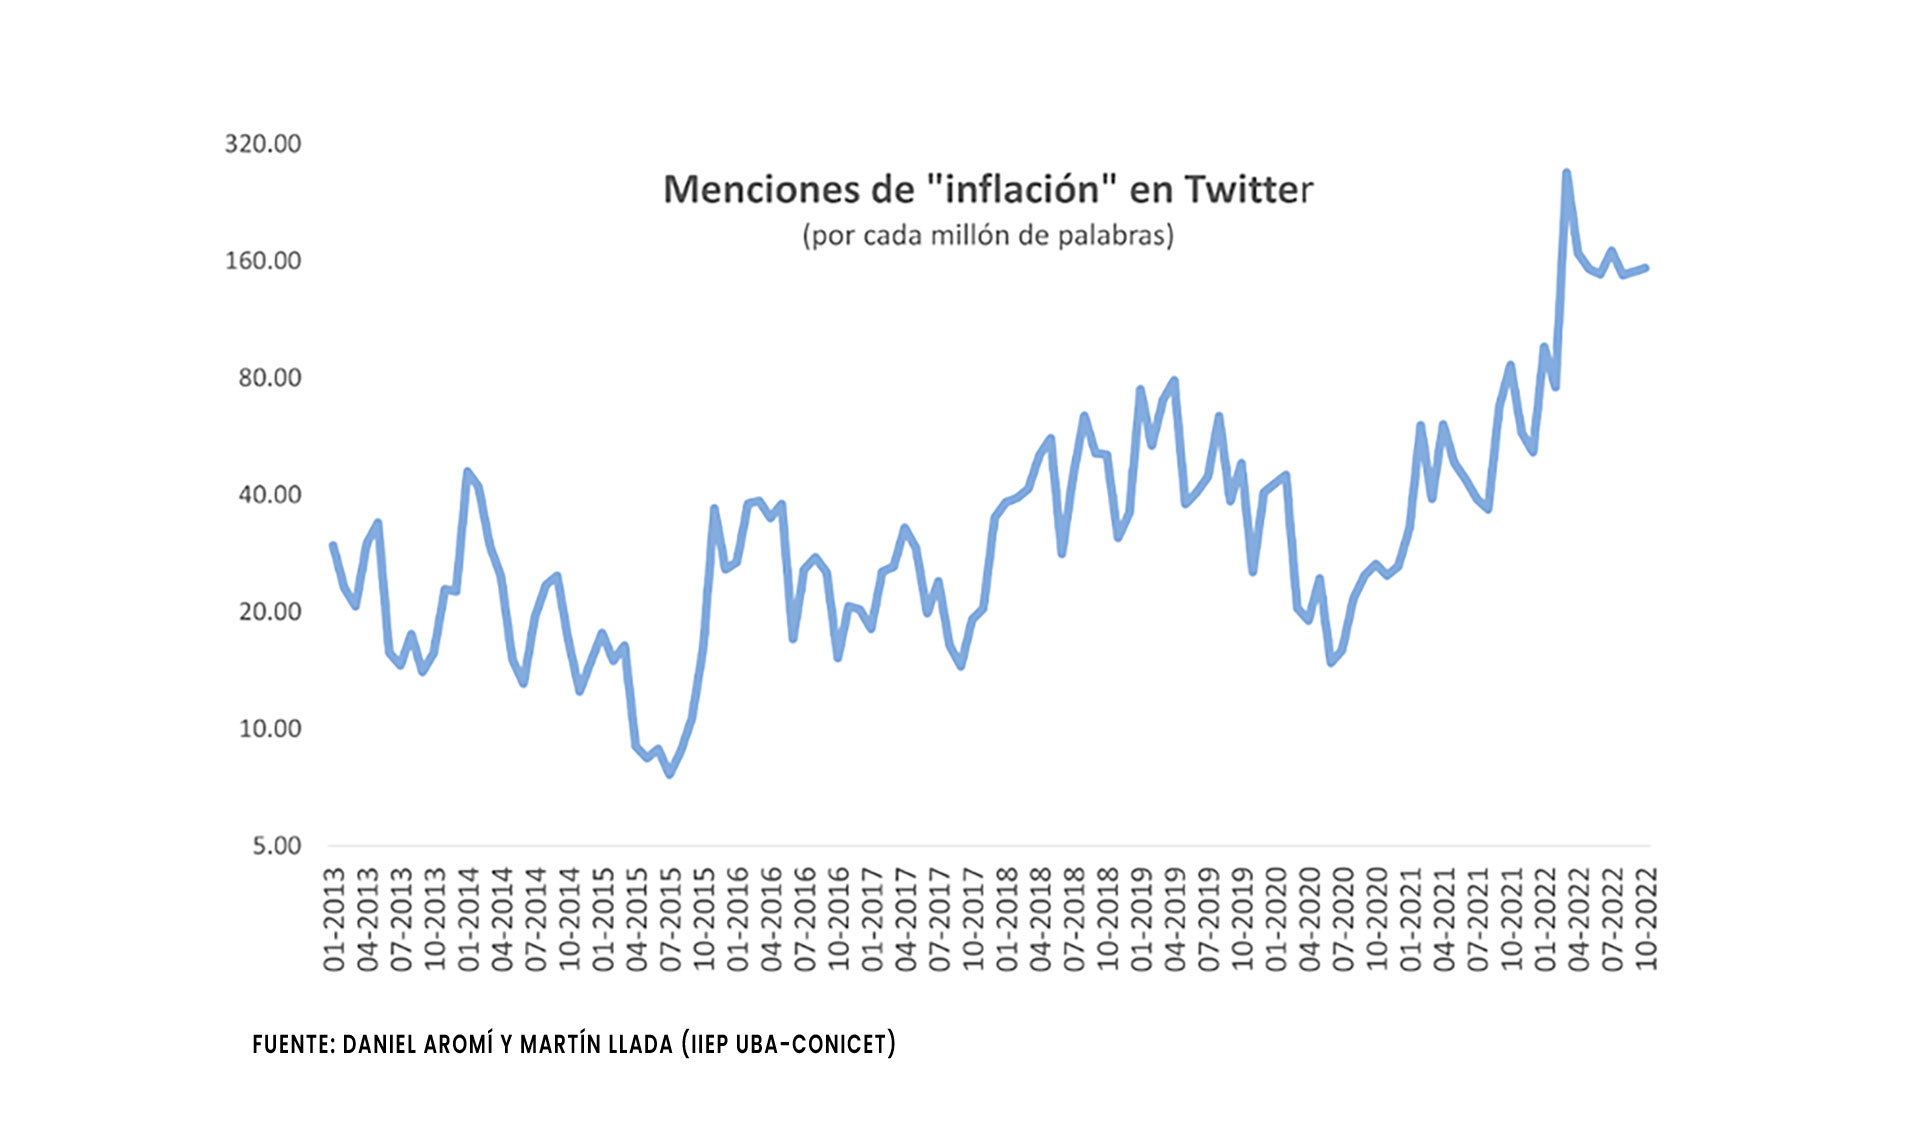 La intensidad de la discusión pública sobre la inflación, medida por las menciones en Twitter